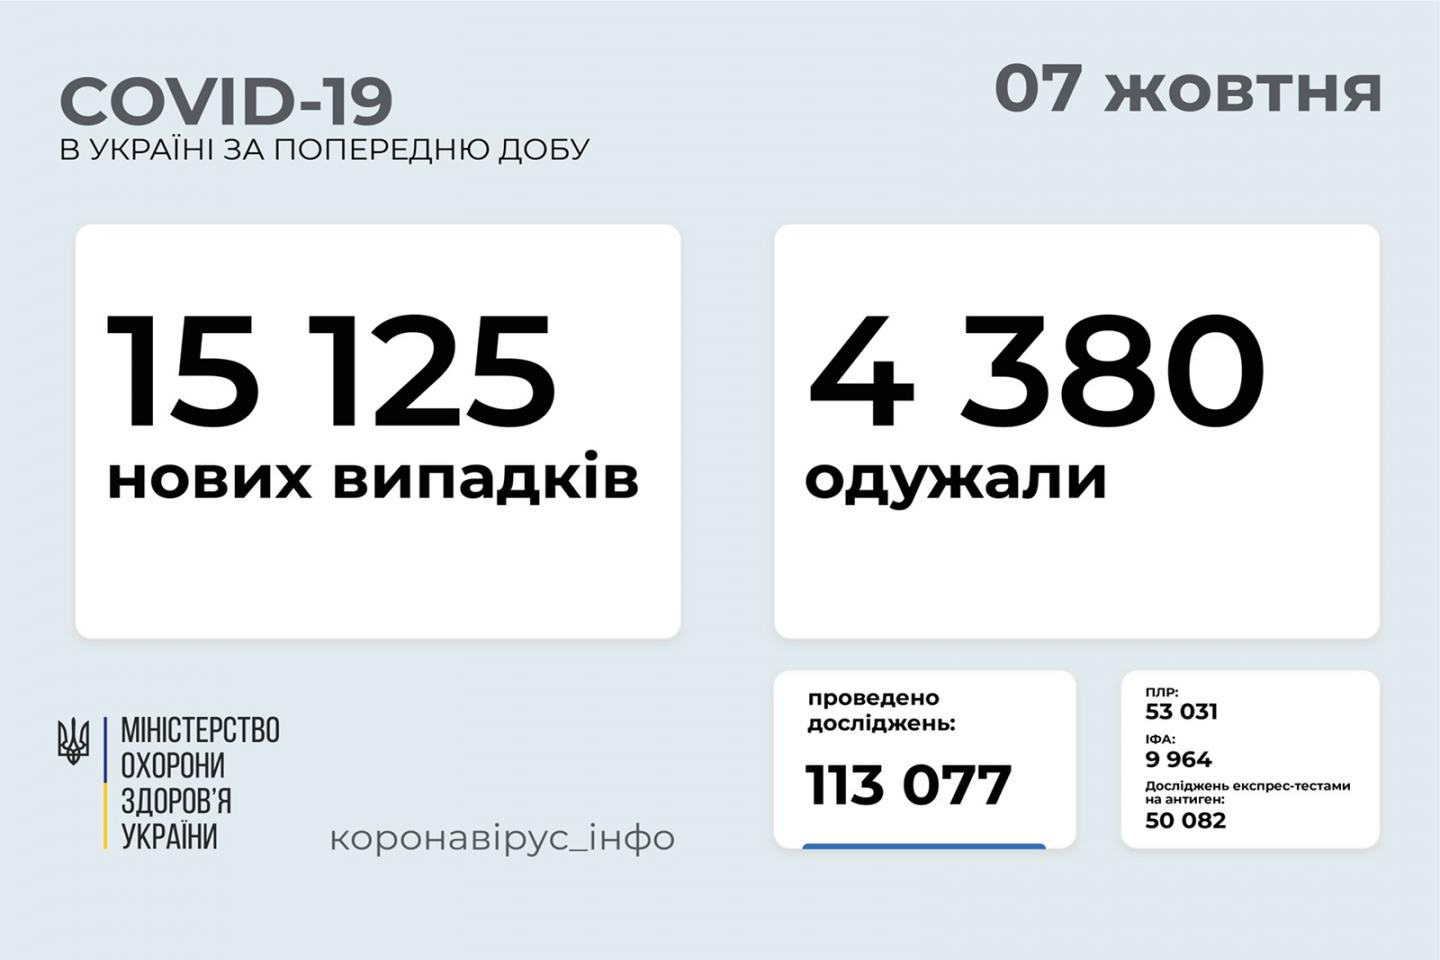 http://dunrada.gov.ua/uploadfile/archive_news/2021/10/07/2021-10-07_8873/images/images-8590.jpg